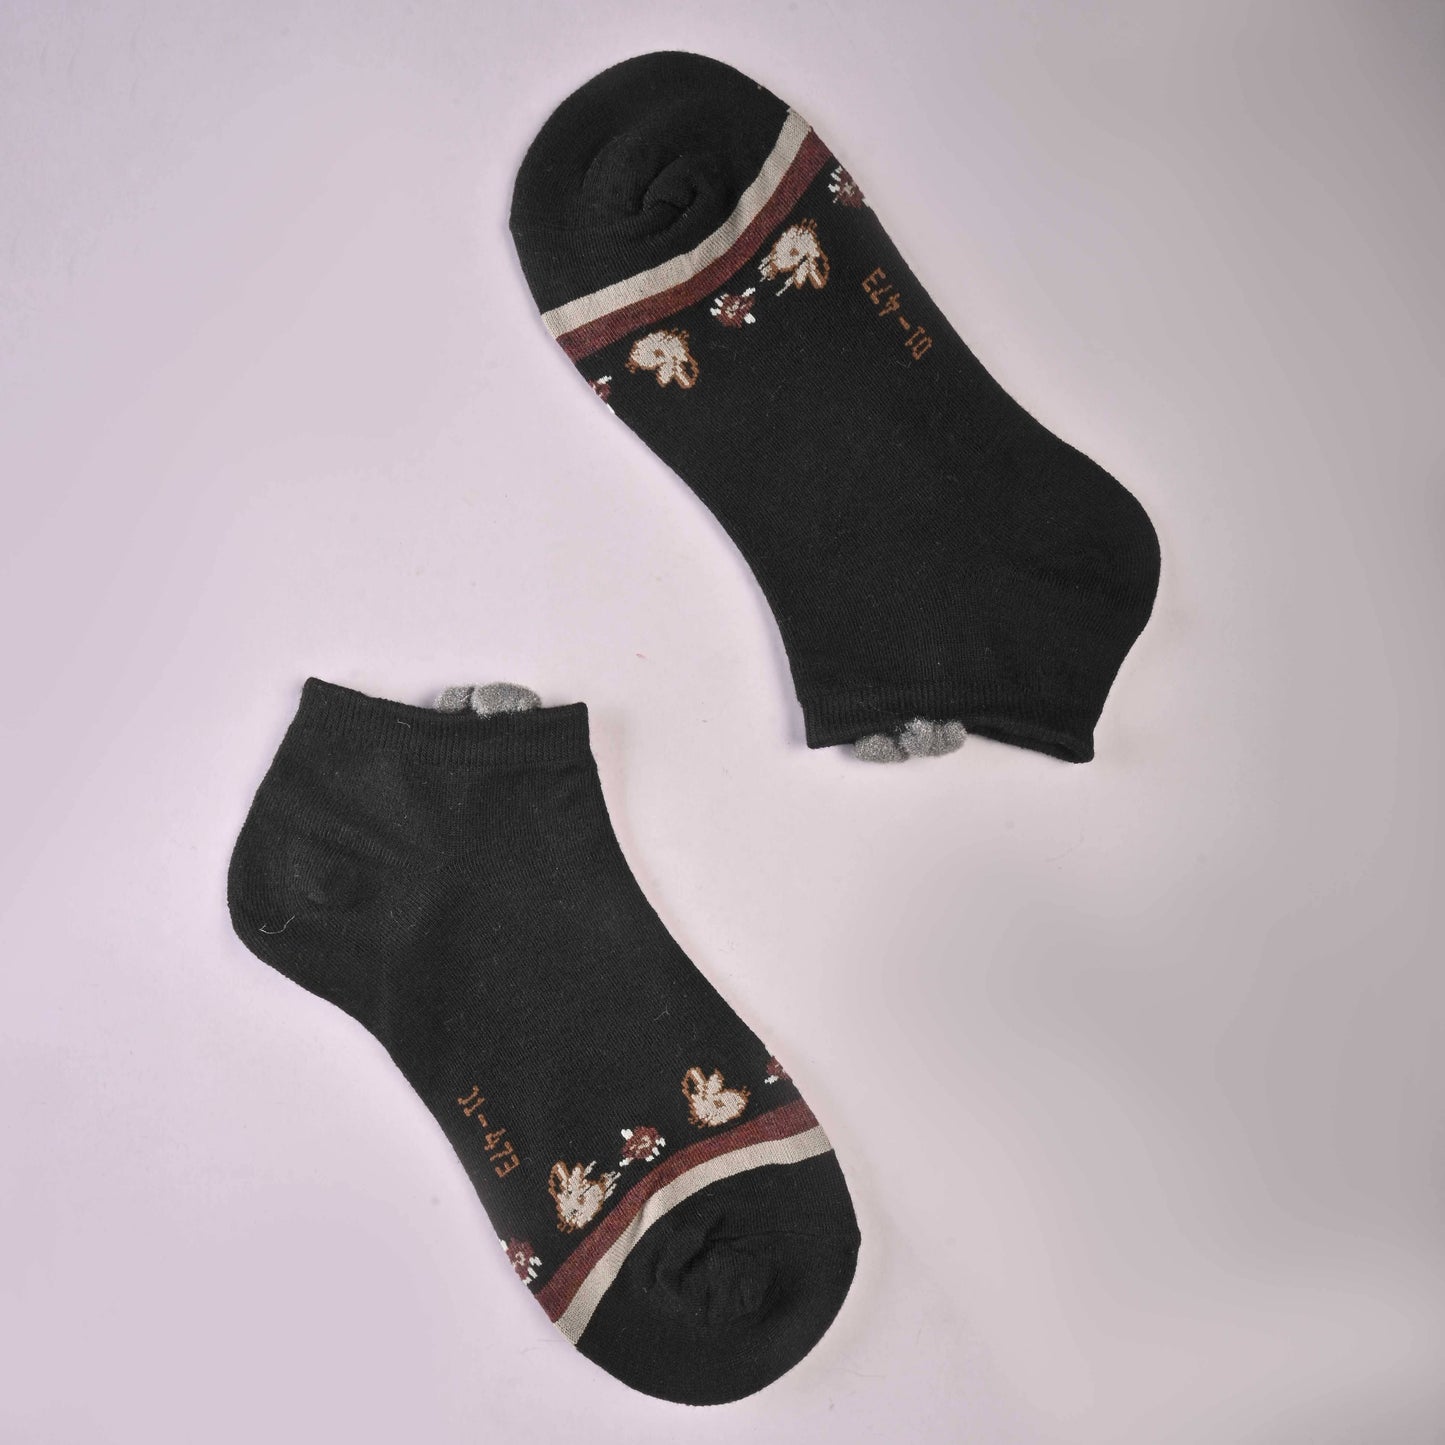 Well Women's Premium Anklet Socks Socks SRL Black D5 EUR 35-40